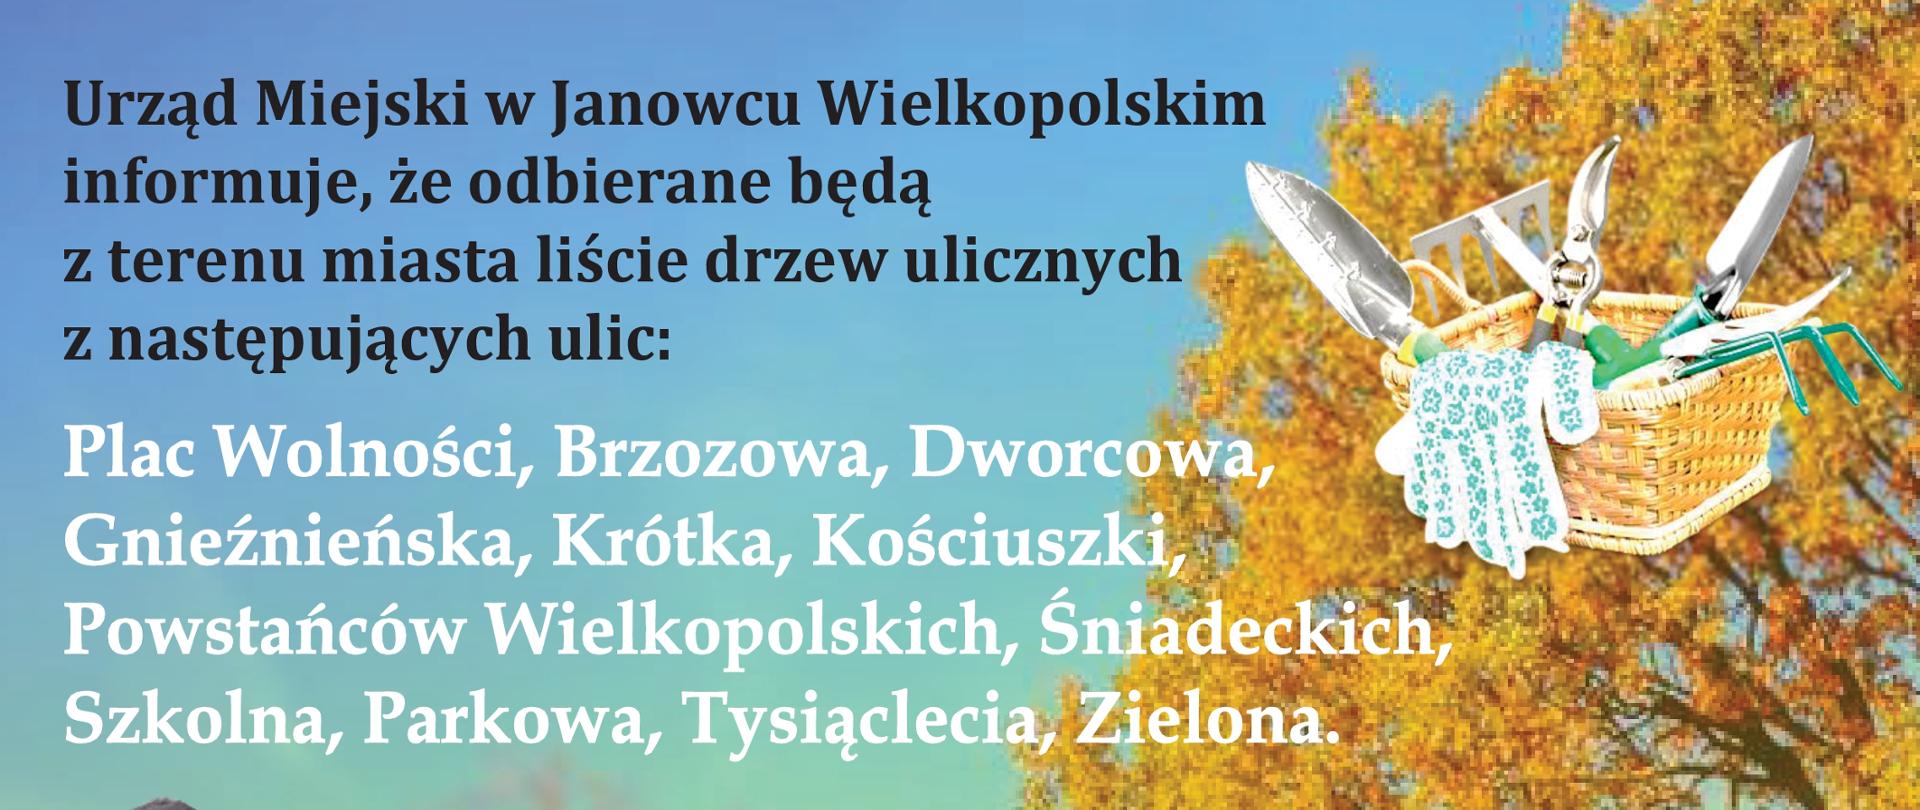 Urząd Miejski w Janowcu Wielkopolskim informuje, że odbierane będą z terenu miasta liście drzew ulicznych z następujących ulic:
Plac Wolności, Brzozowa, Dworcowa, Gnieźnieńska, Krótka, Kościuszki, Powstańców Wielkopolskich, Śniadeckich, Szkolna, Parkowa, Tysiąclecia, Zielona.
